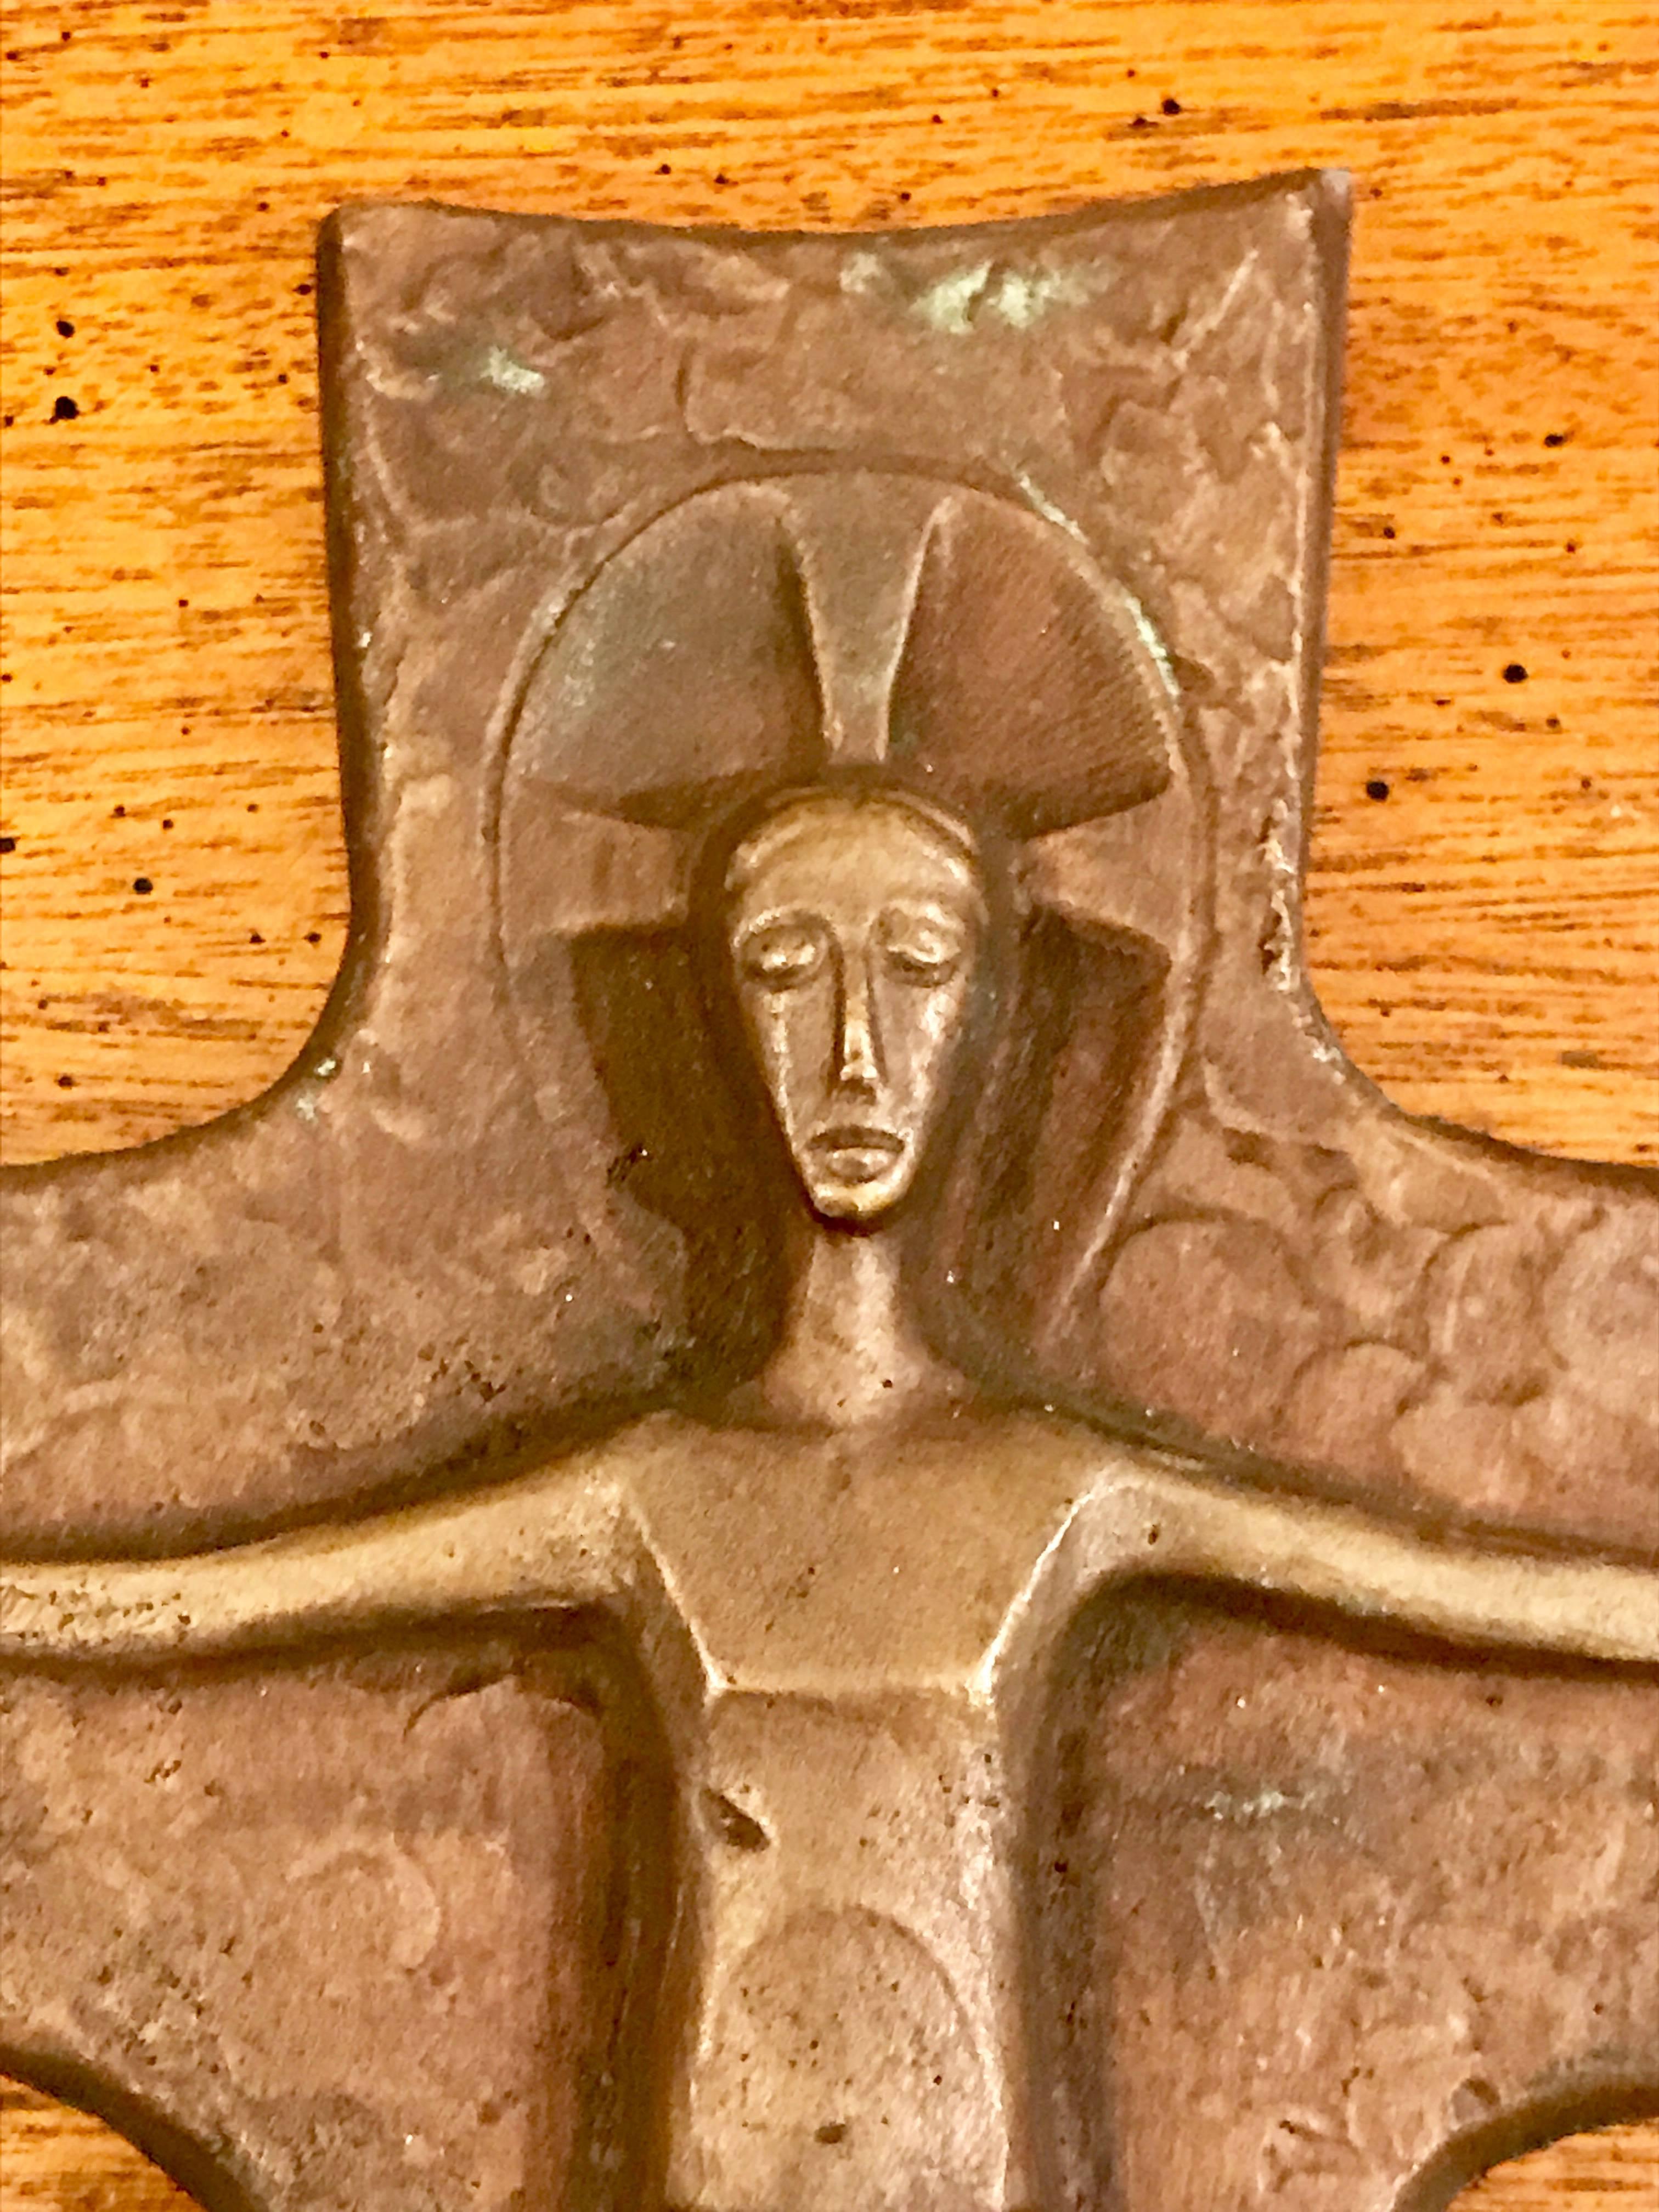 Magnifique crucifix en bronze brutaliste du milieu du siècle, fabriqué à la main en Allemagne de l'Ouest. Artistics inconnu.